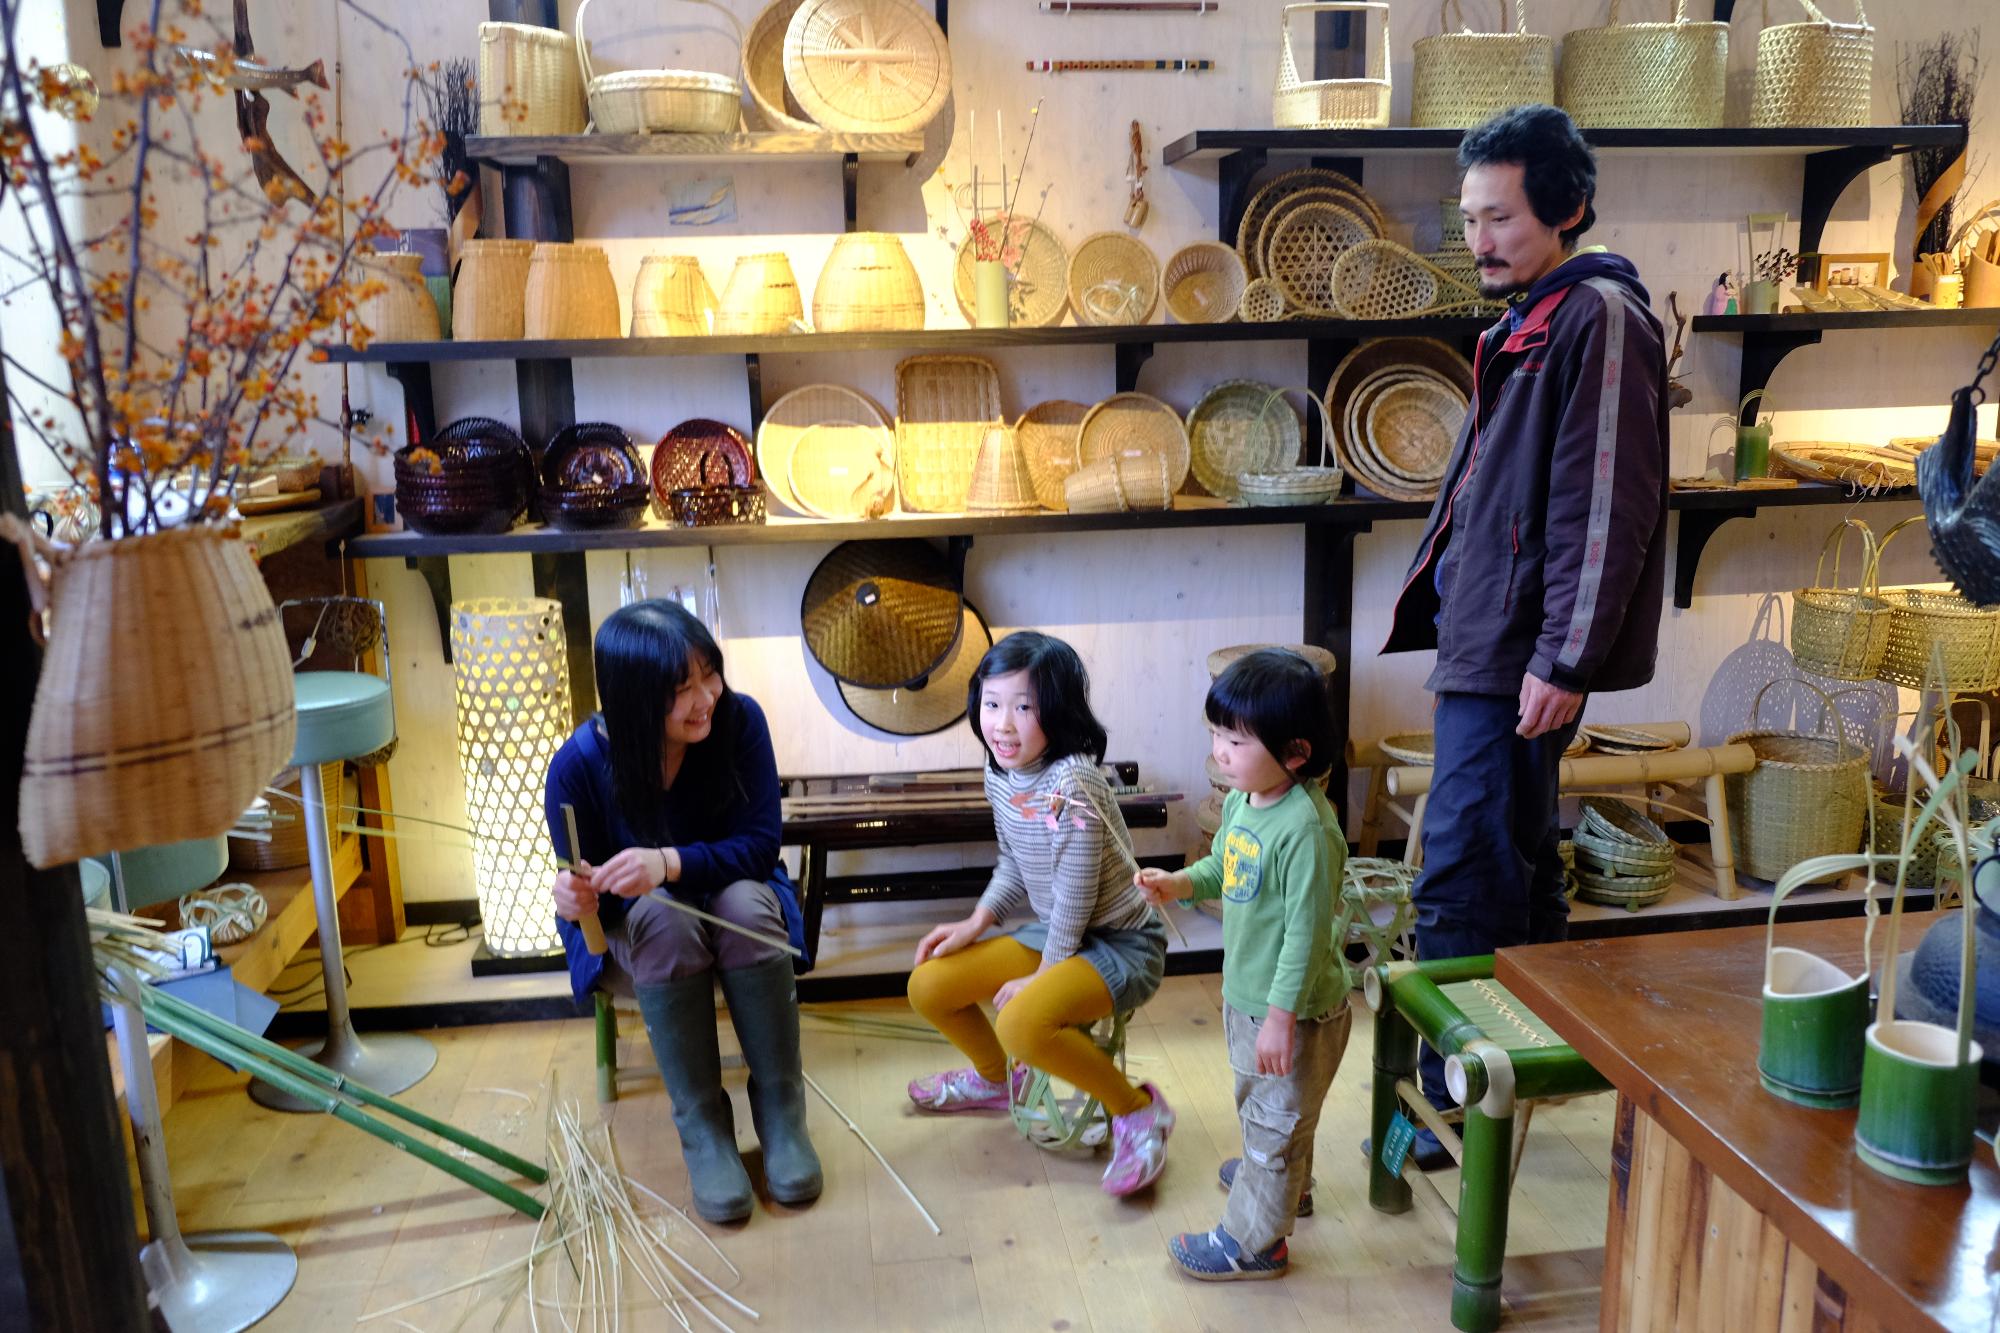 竹細工をしている沼澤さん家族の写真